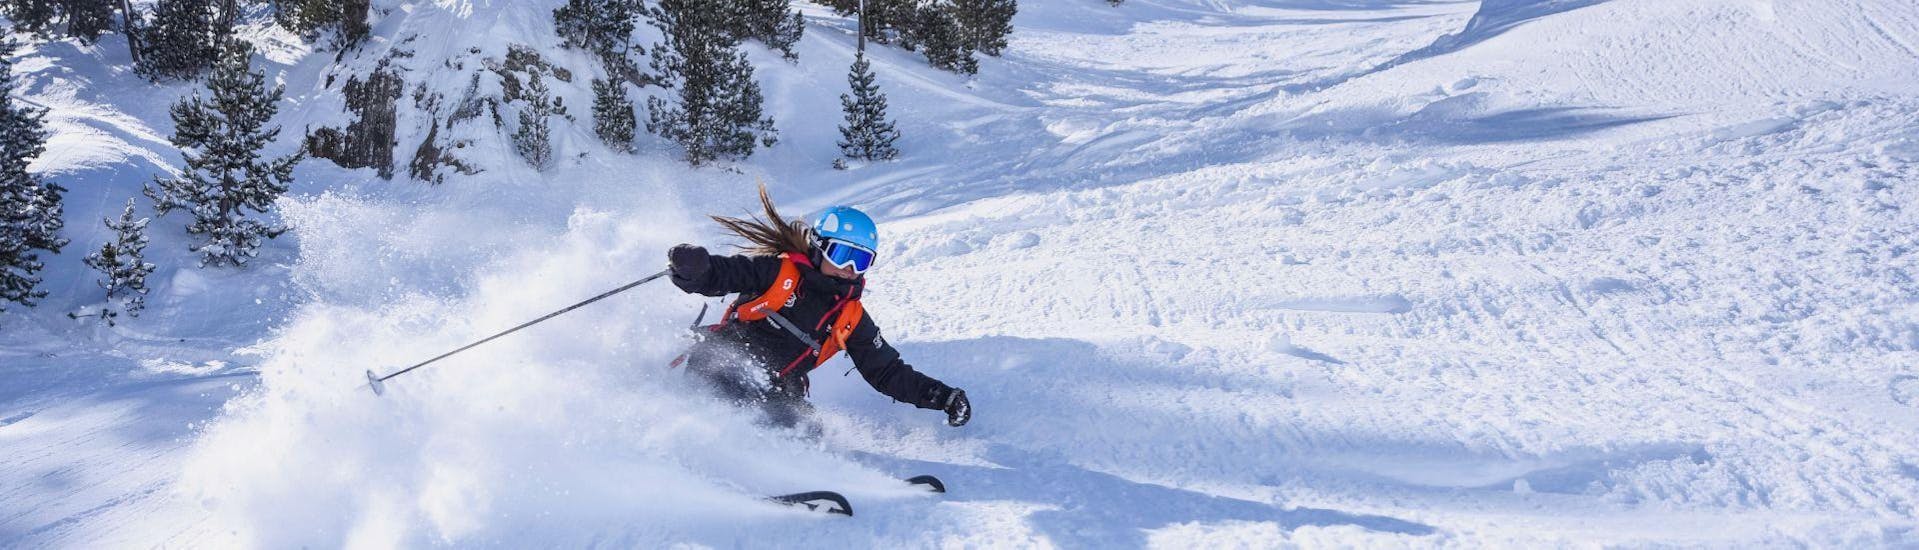 Een skileraar van Escuela Ski Sierra Nevada skiet elegant en sportief van de pistes tijdens de privé skilessen voor volwassenen - alle niveaus.